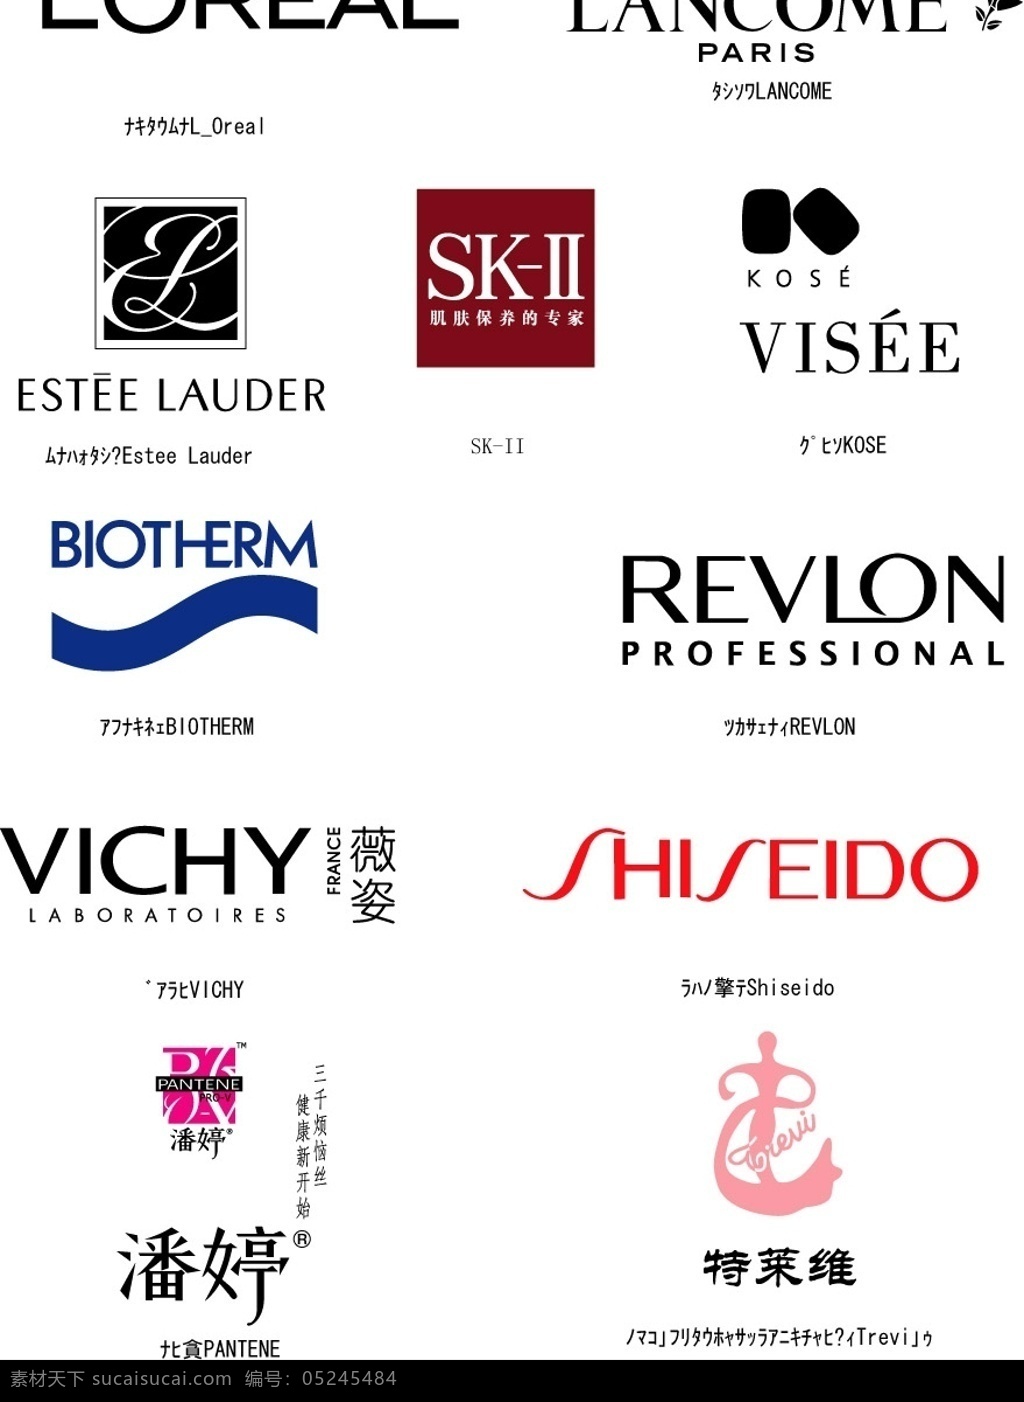 世界 知名 化妆品 品牌 标志 碧欧泉 薇姿 skii 标识标志图标 企业 logo 矢量图库